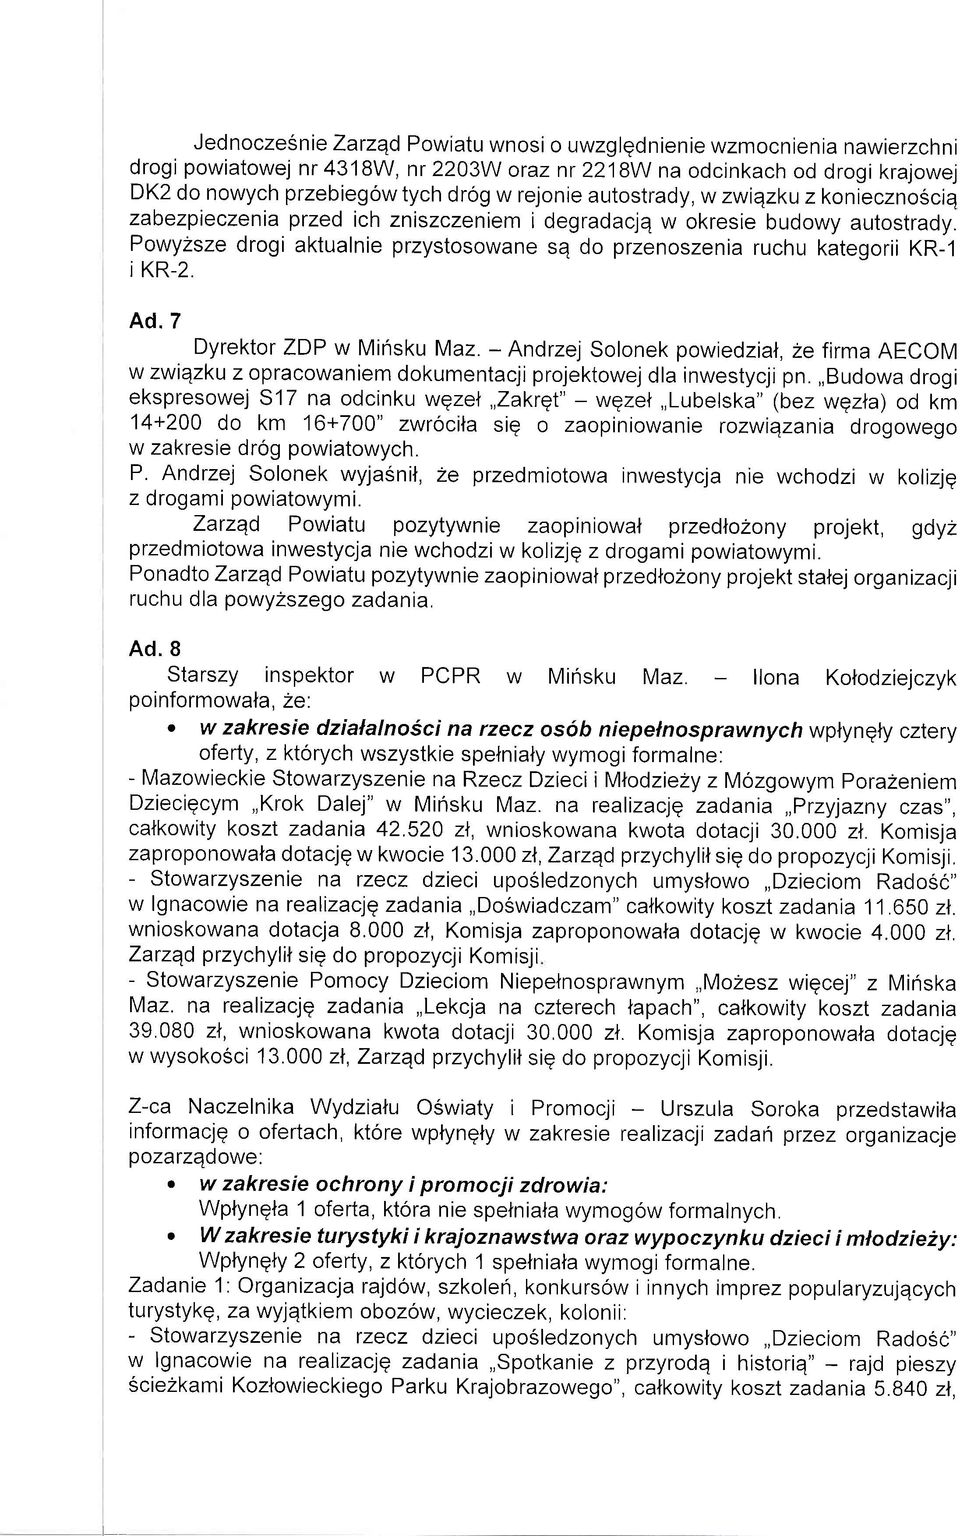 Powyzsze drogi aktualnie przystosowane se do przenoszenia ruchu kategorii KR-1 i KR-2. Ad.7 Dyrektor ZDP w Minsku Maz.